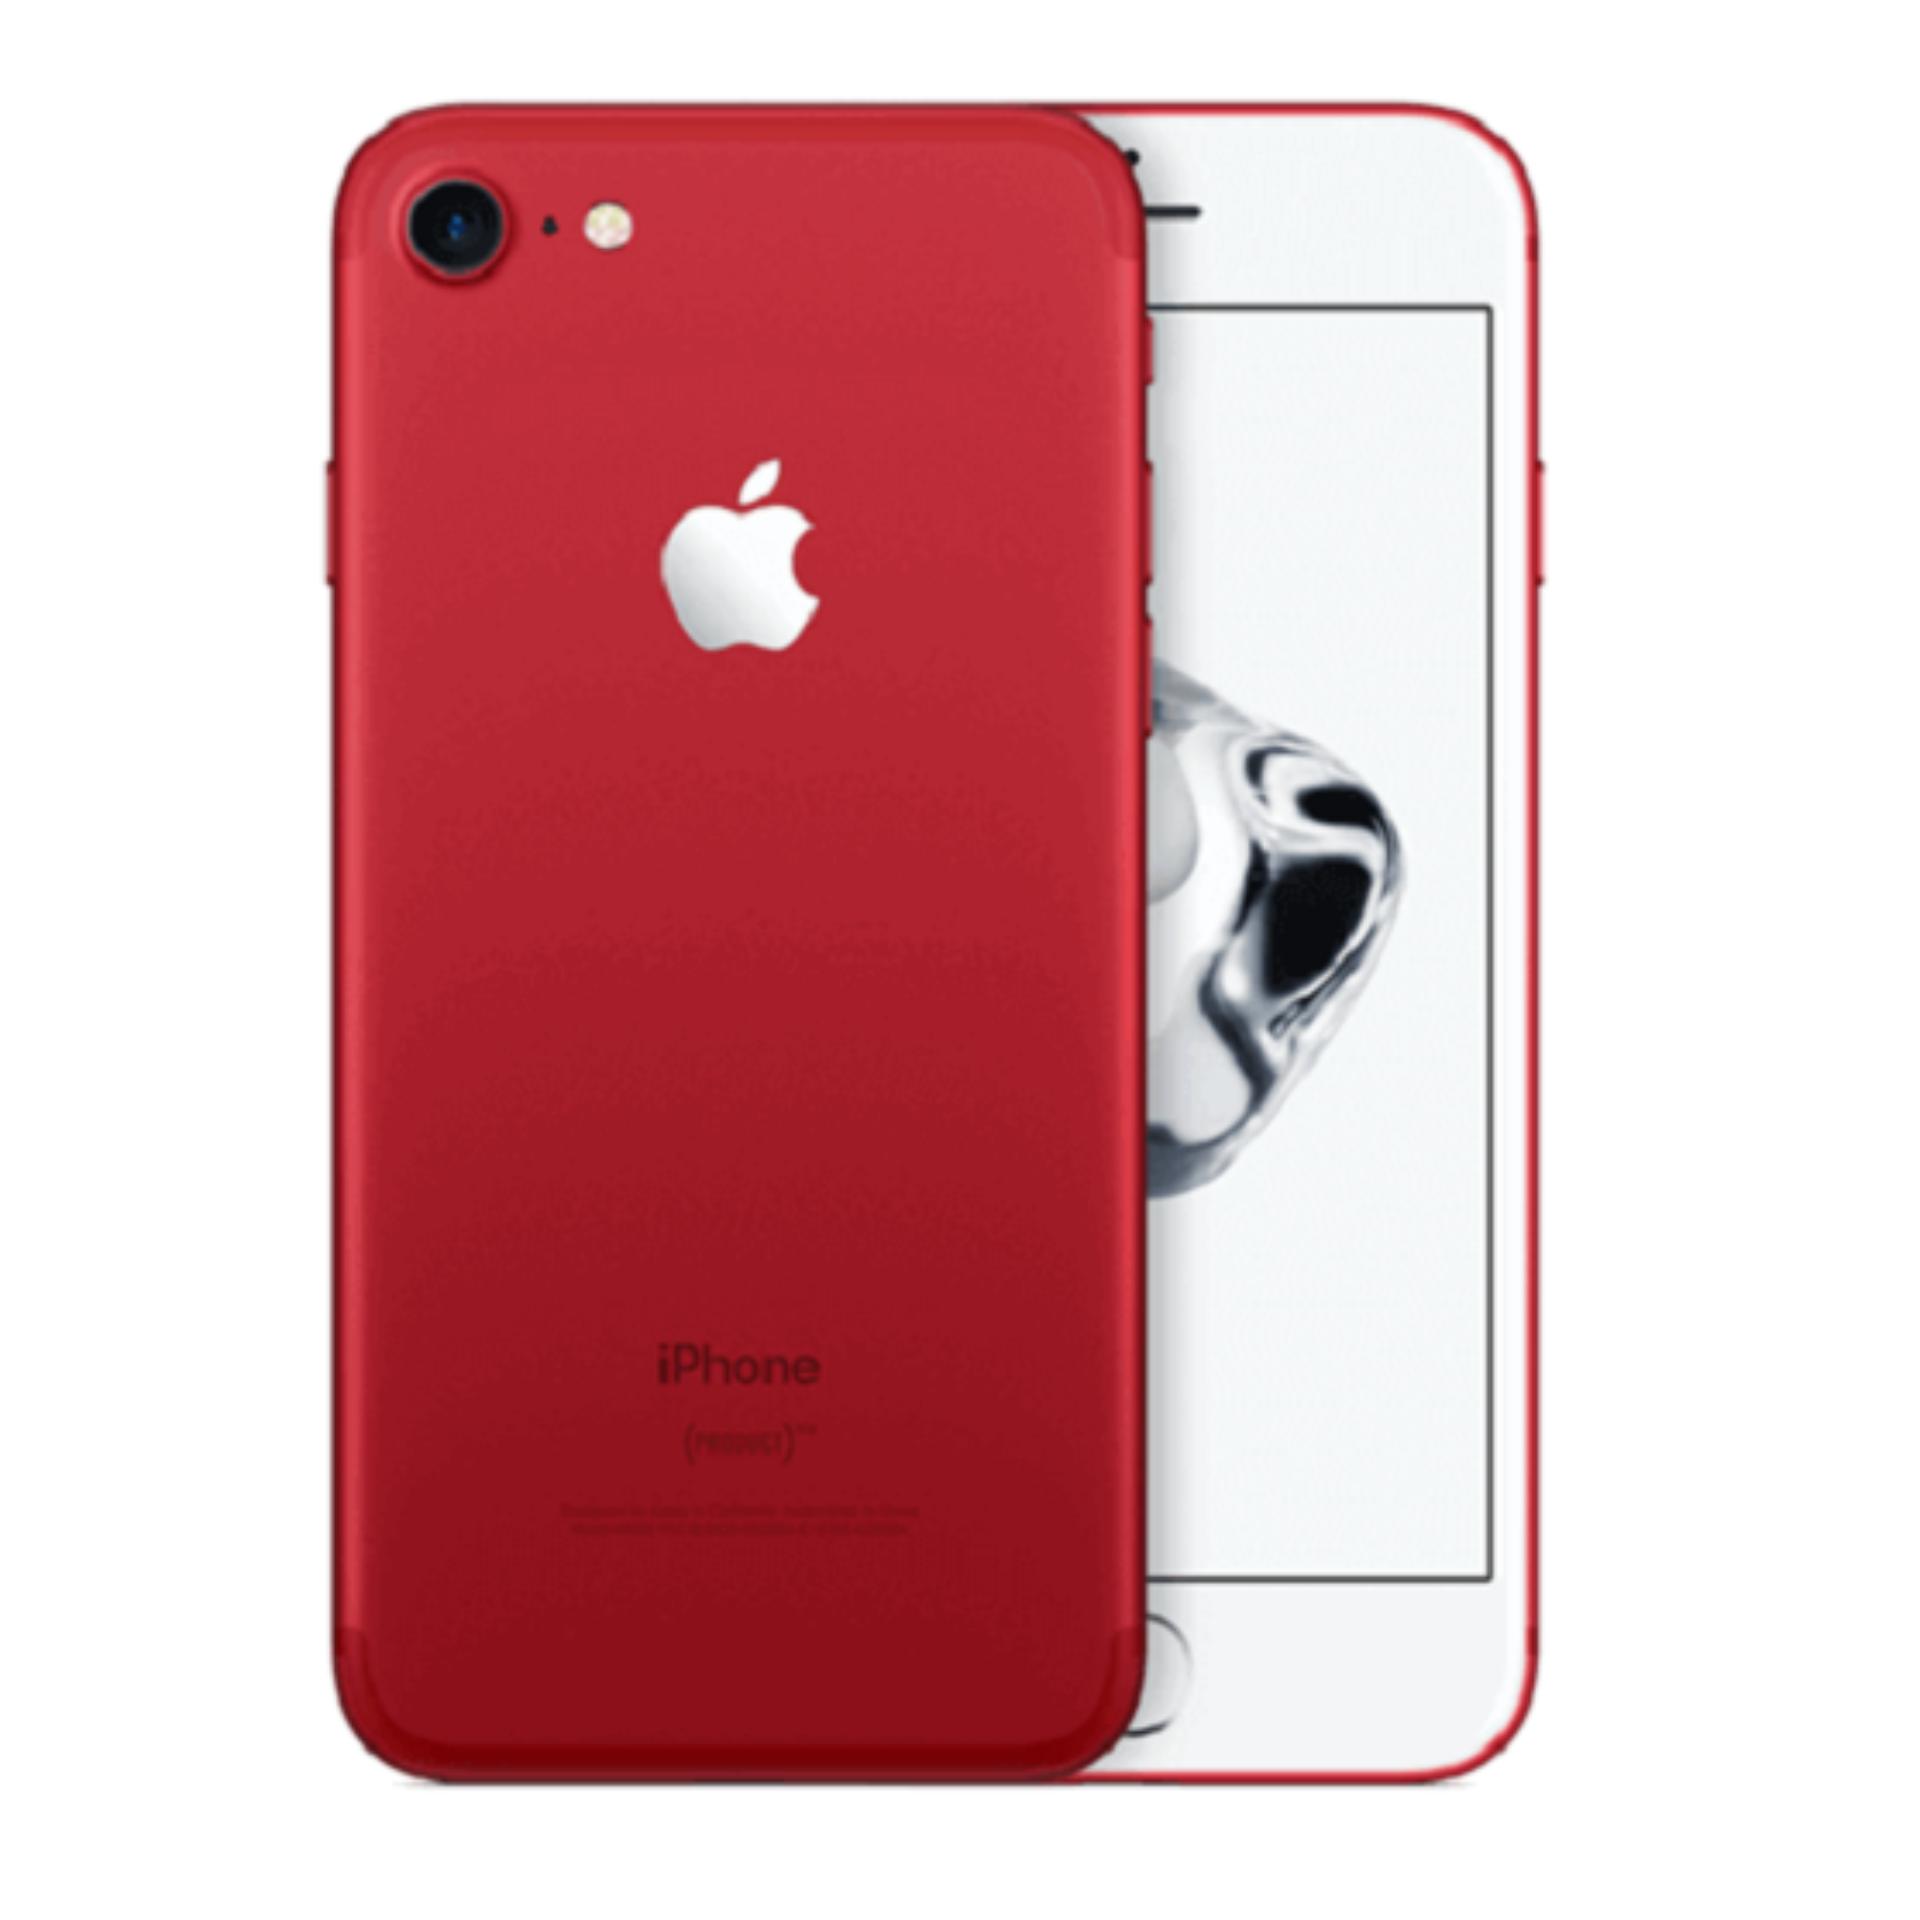 Iphone 7 Đỏ 128gb - Hàng Nhập Khẩu